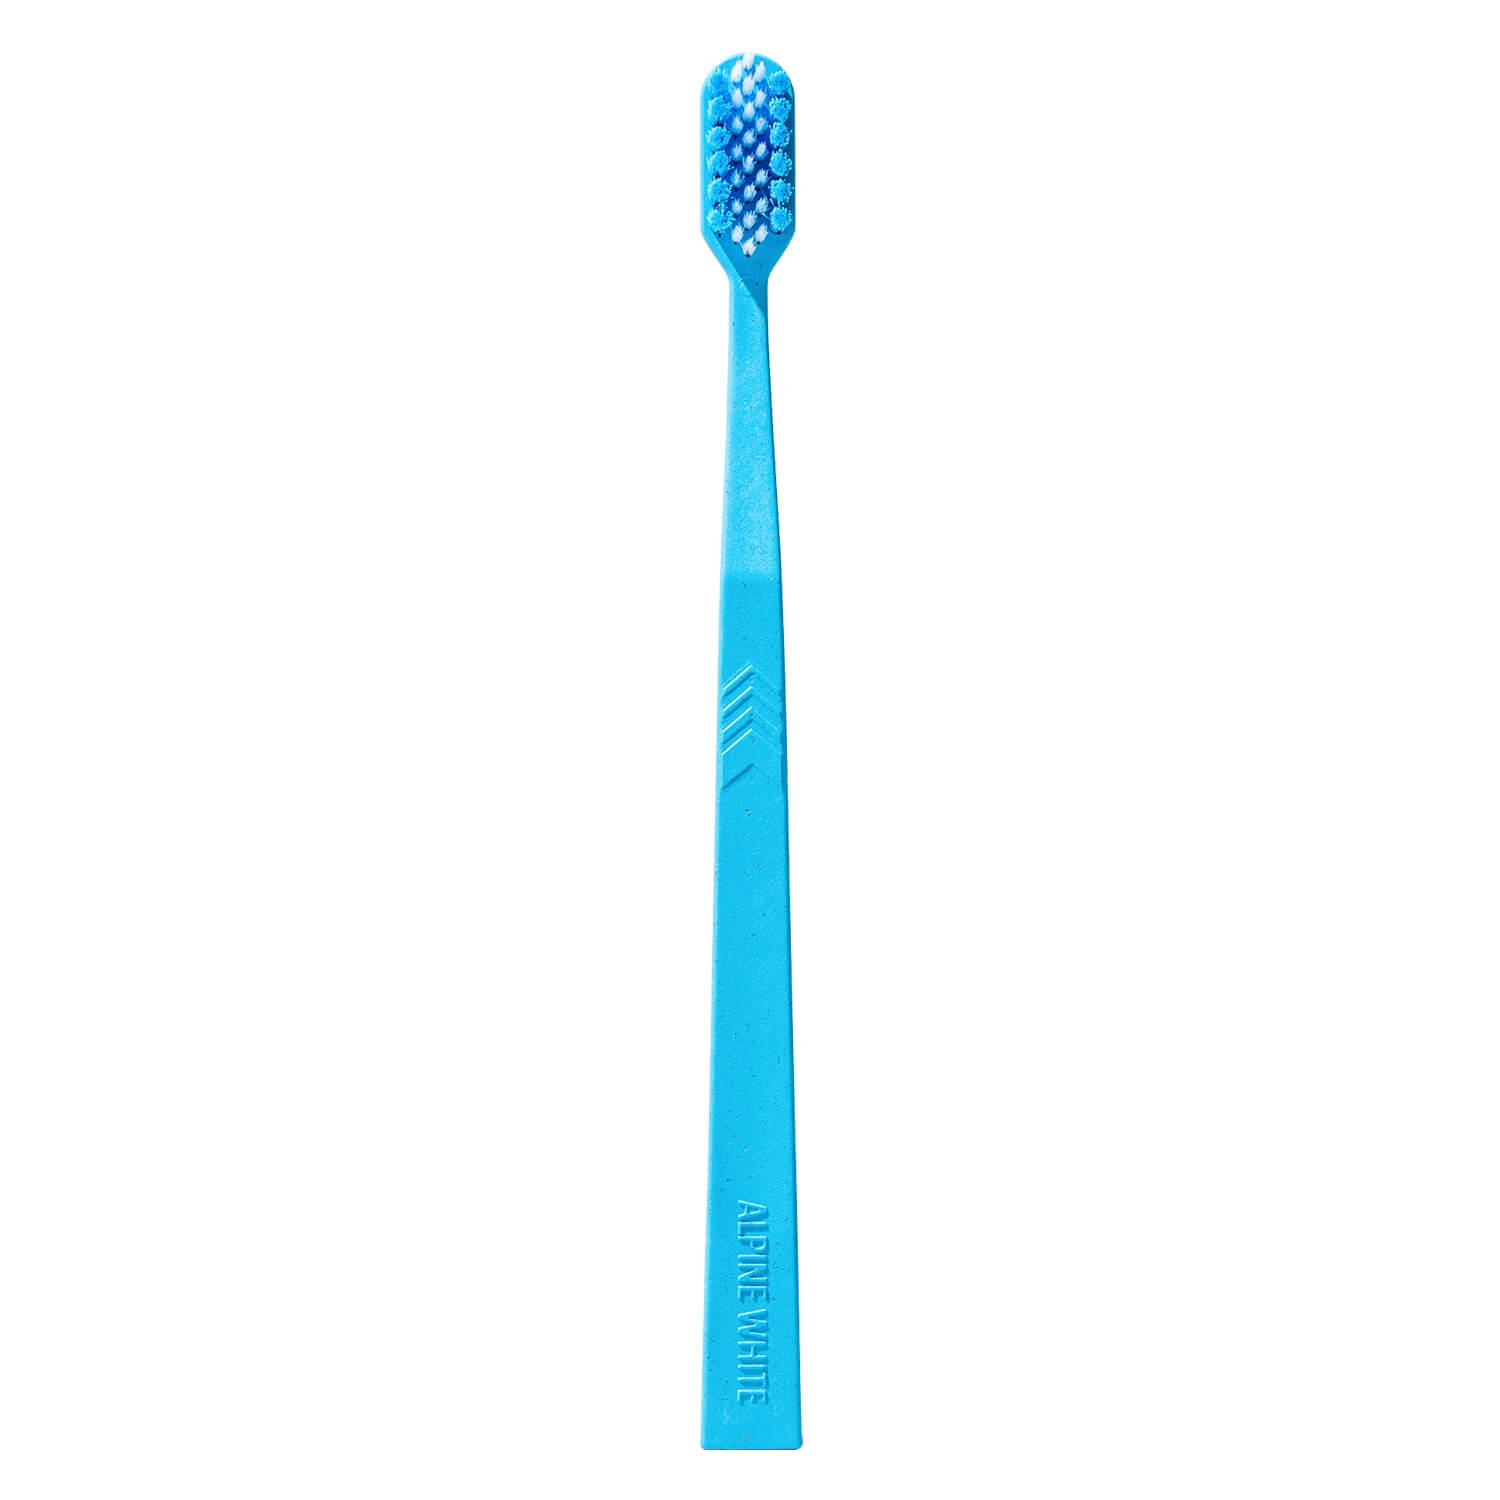 ALPINE WHITE - Toothbrush